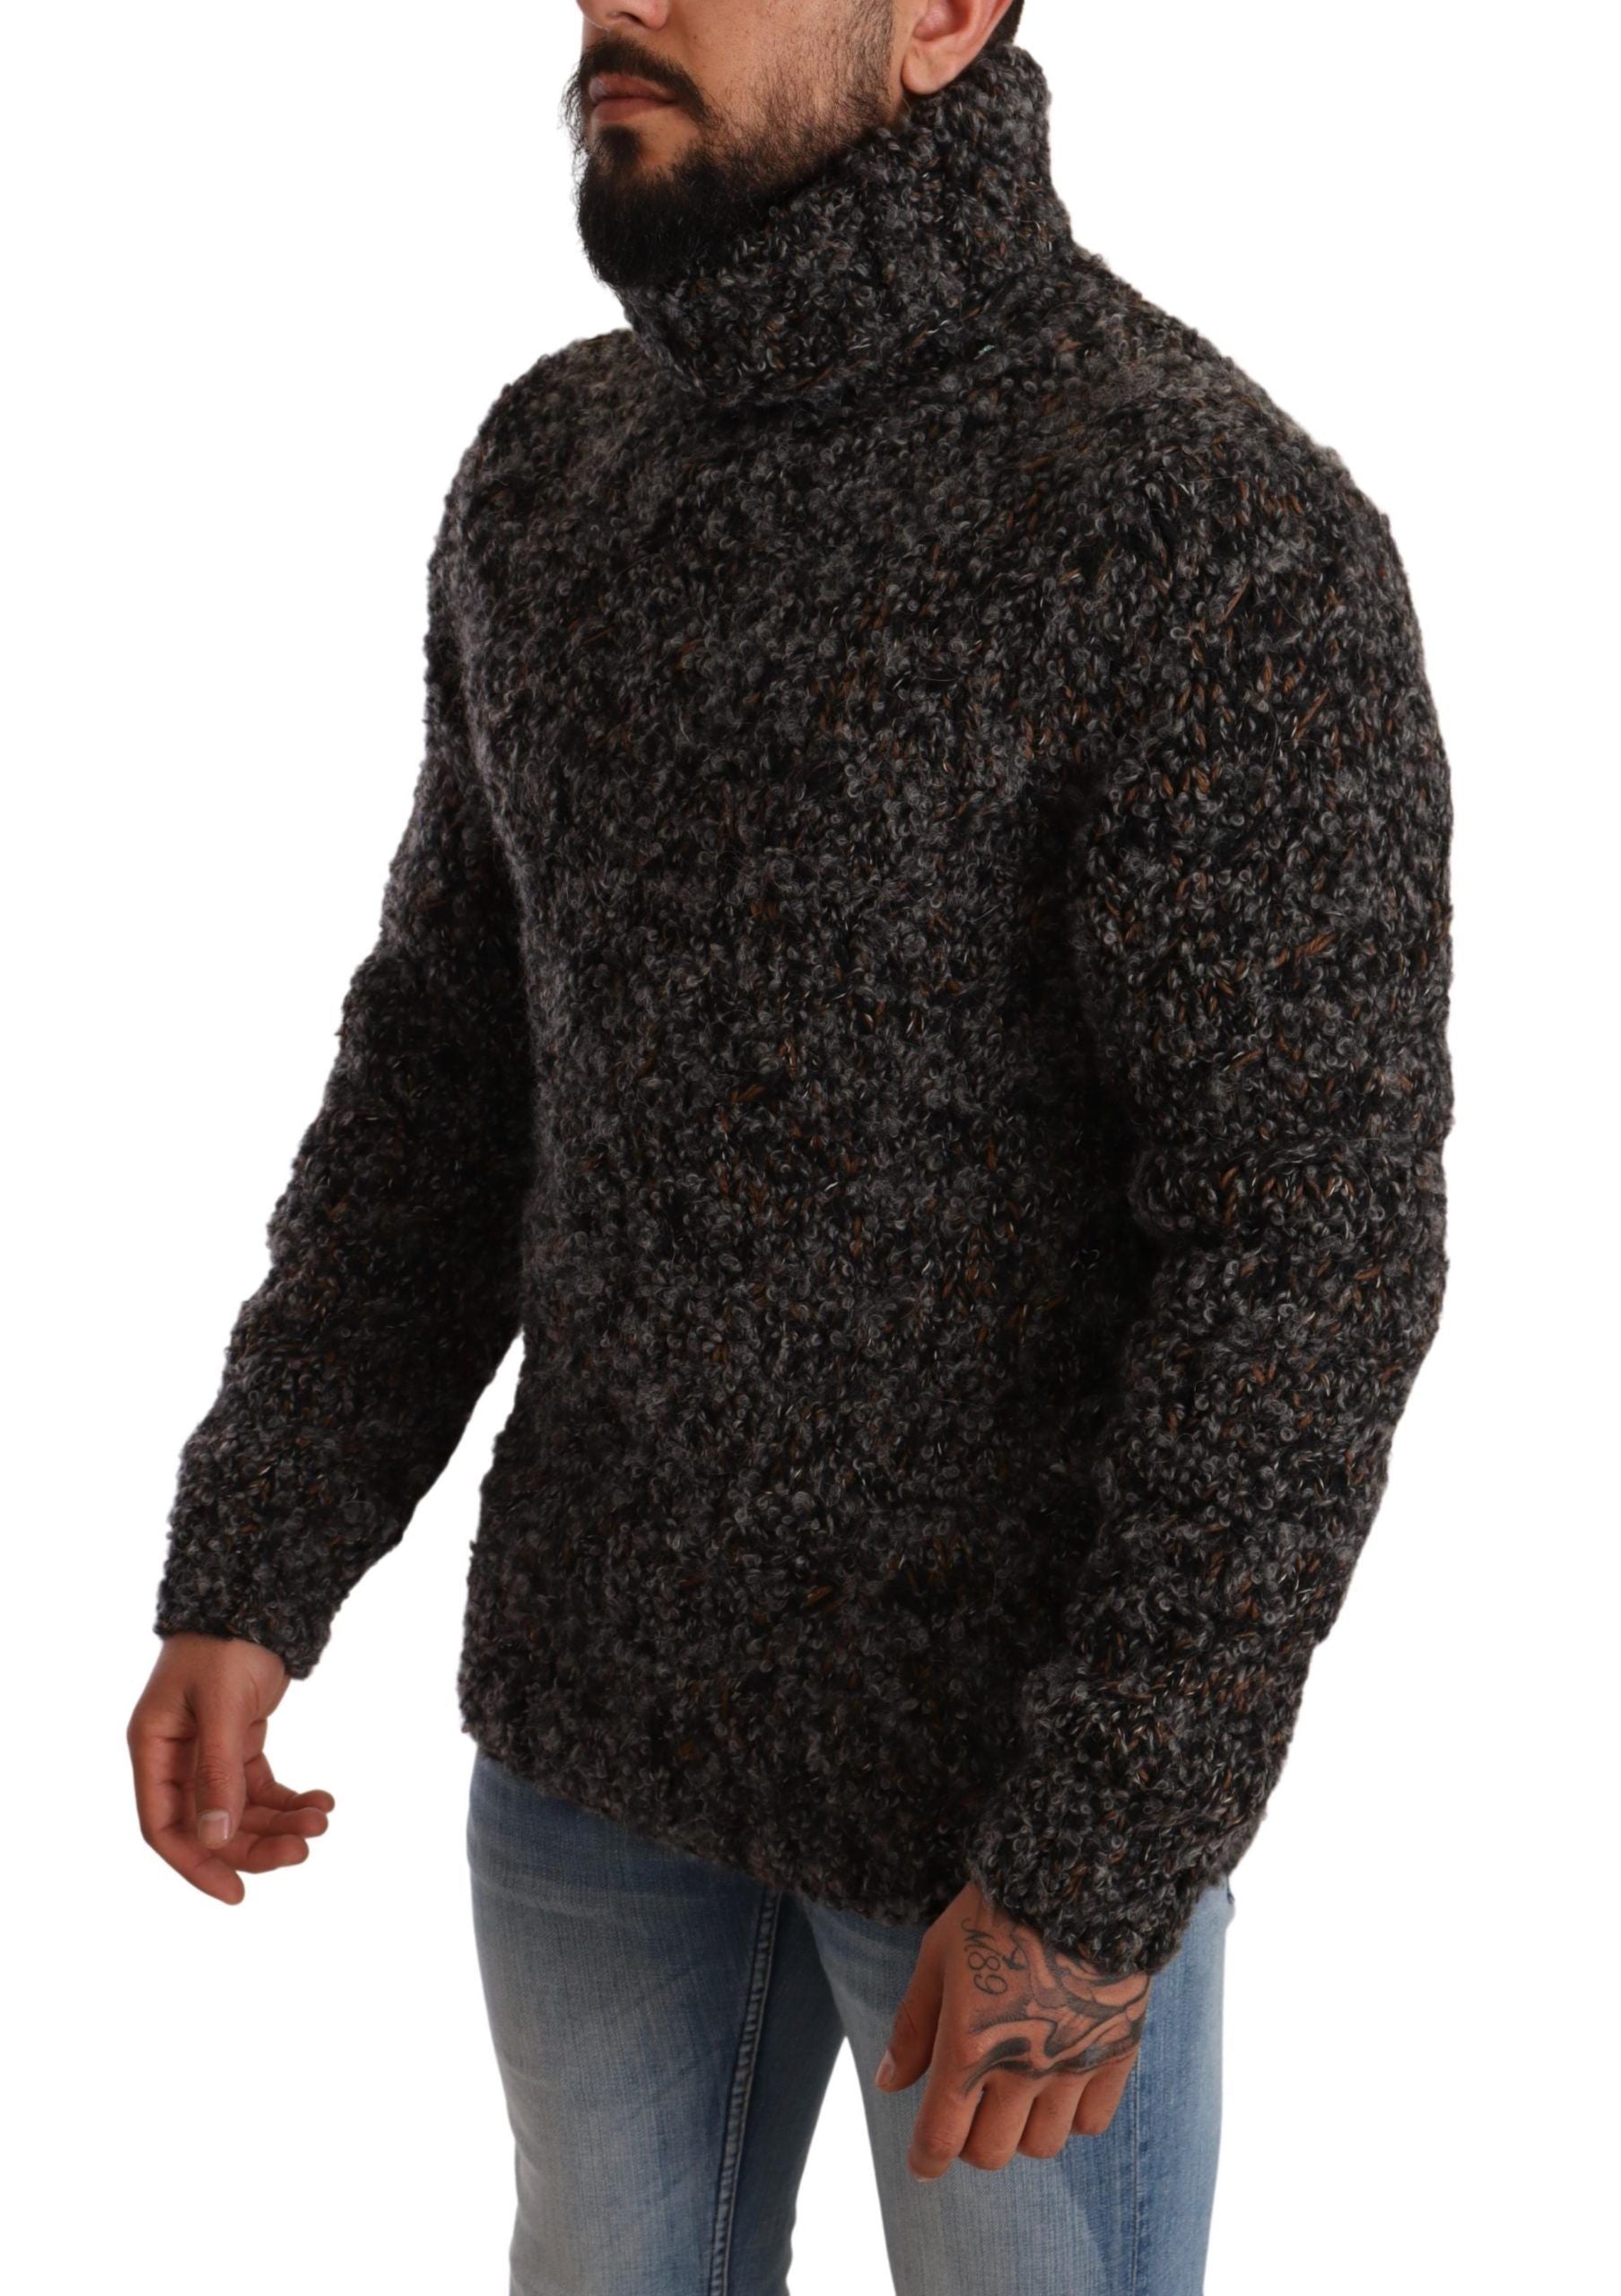 Elegant Speckled Turtleneck Wool-Blend Sweater